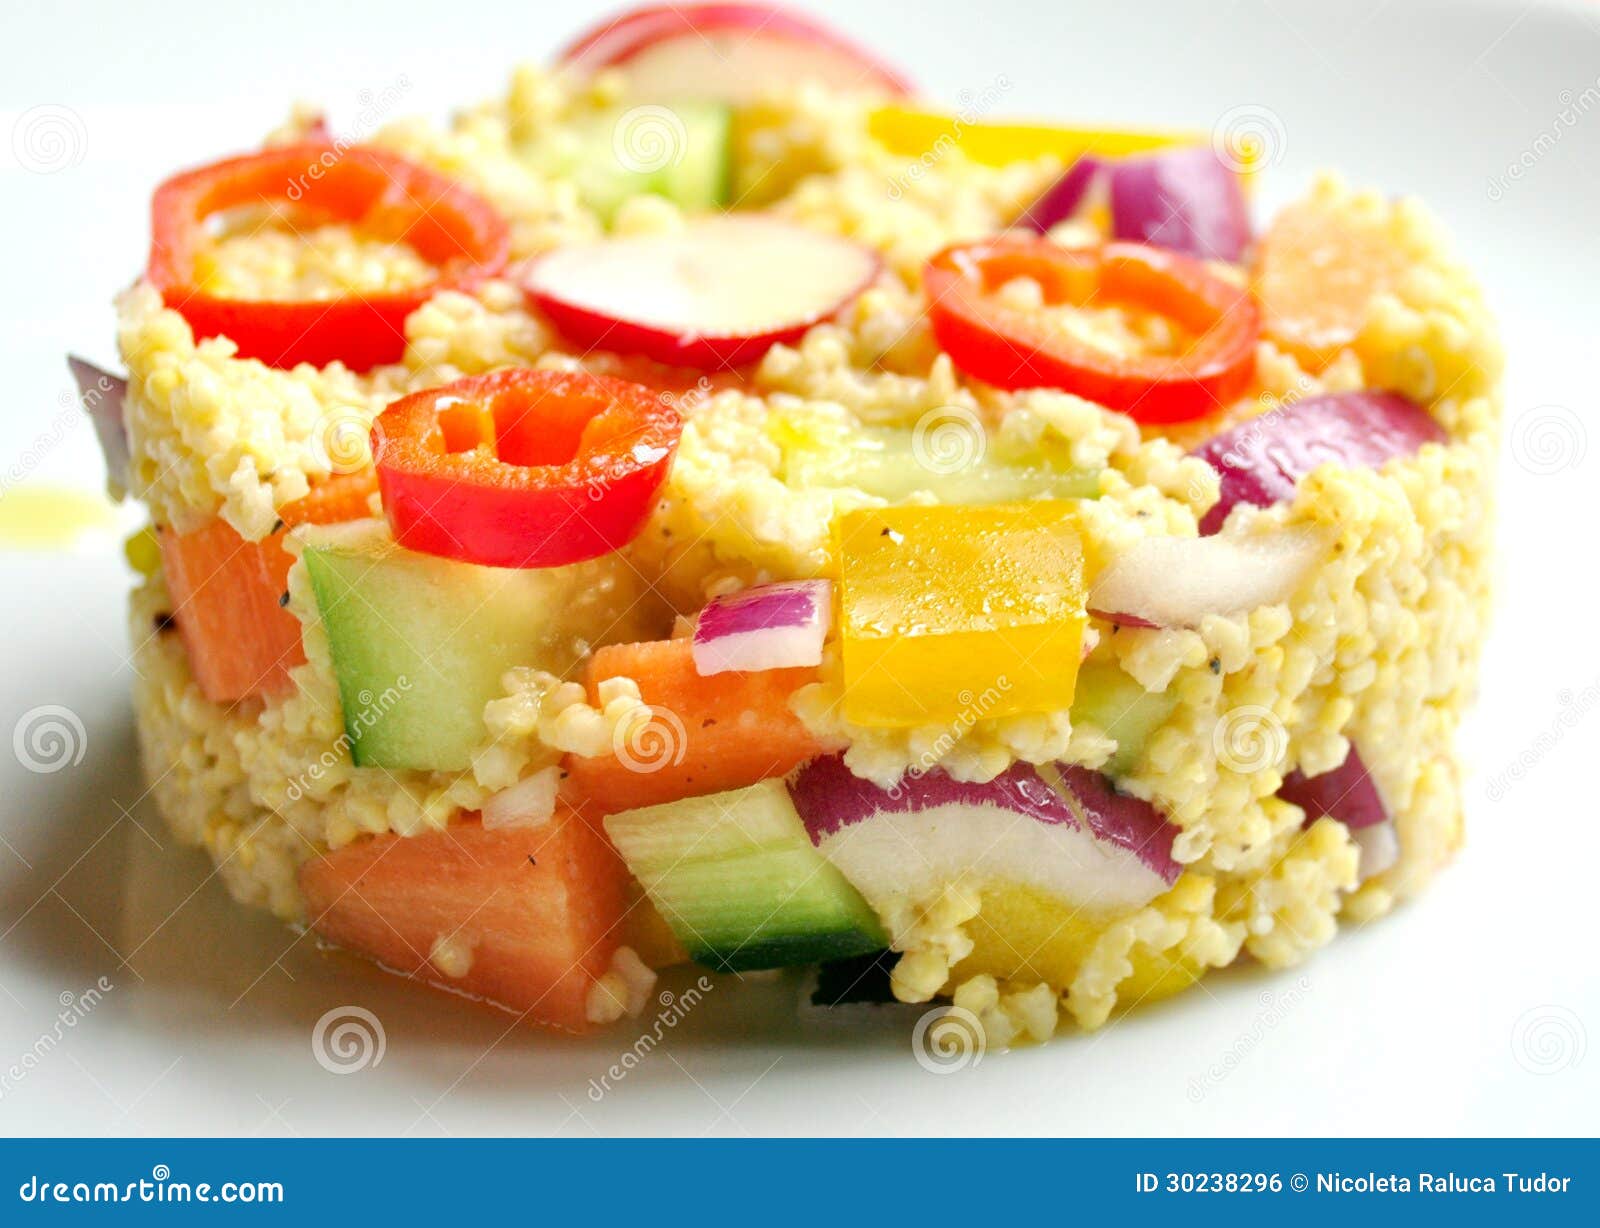 vegan salad : millet dish with vegetables